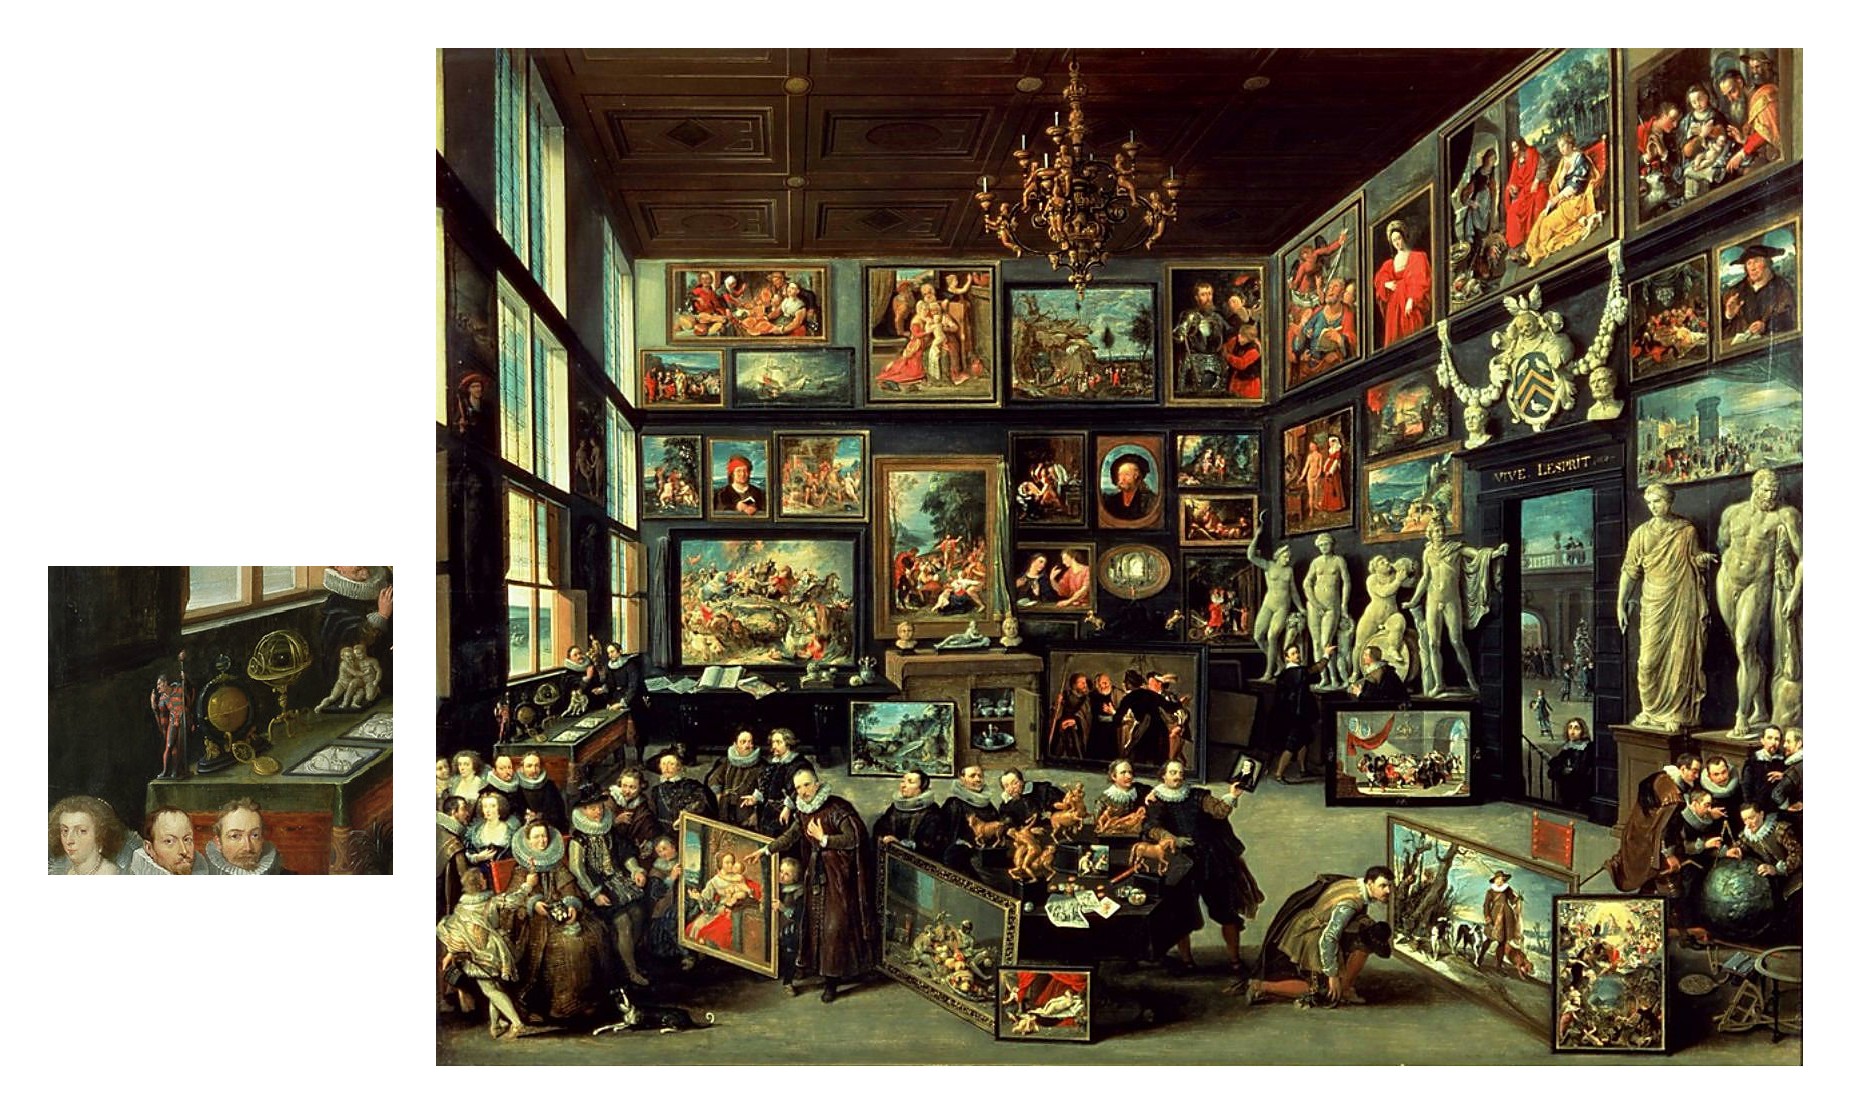 1628_Willem_van_Haecht_The_Gallery_of_Cornelis_van_der_Geest.jpg